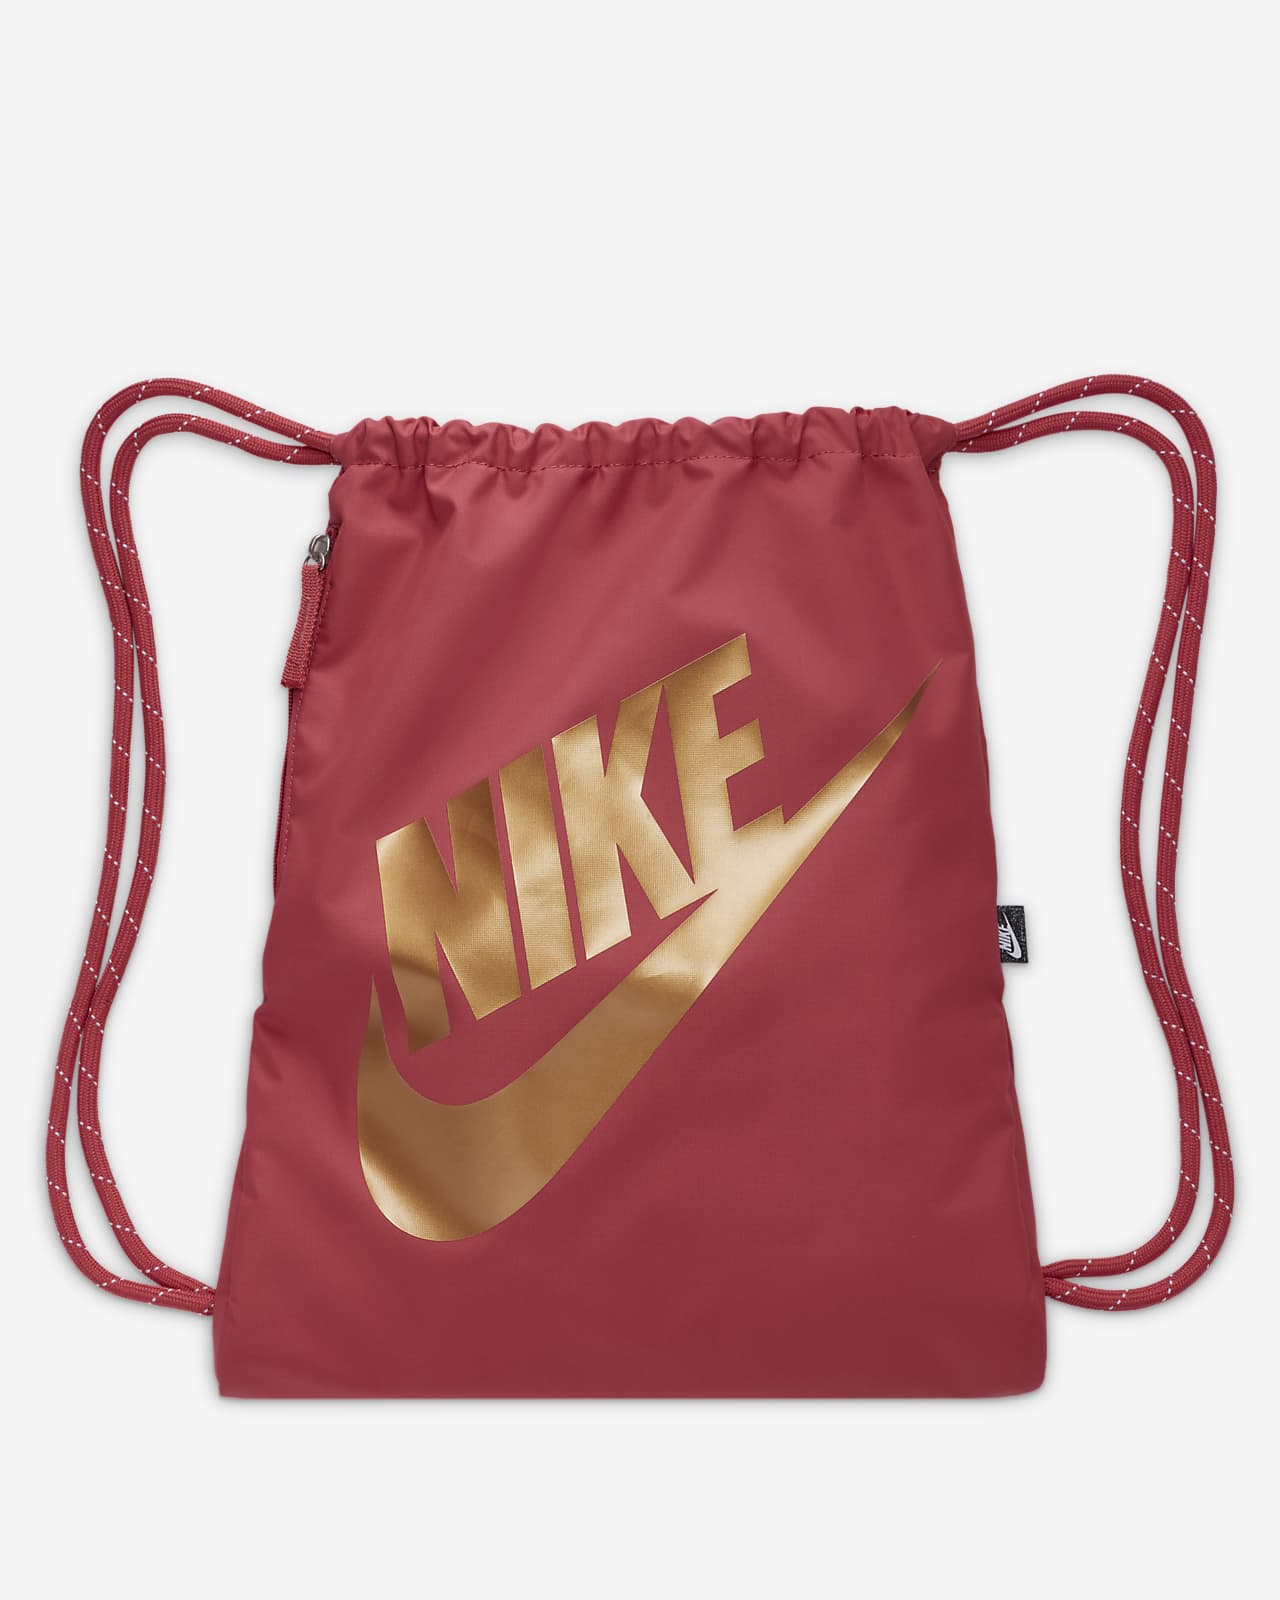 Efterligning klap Globus Nike Heritage-taske med snoretræk (13 L). Nike DK